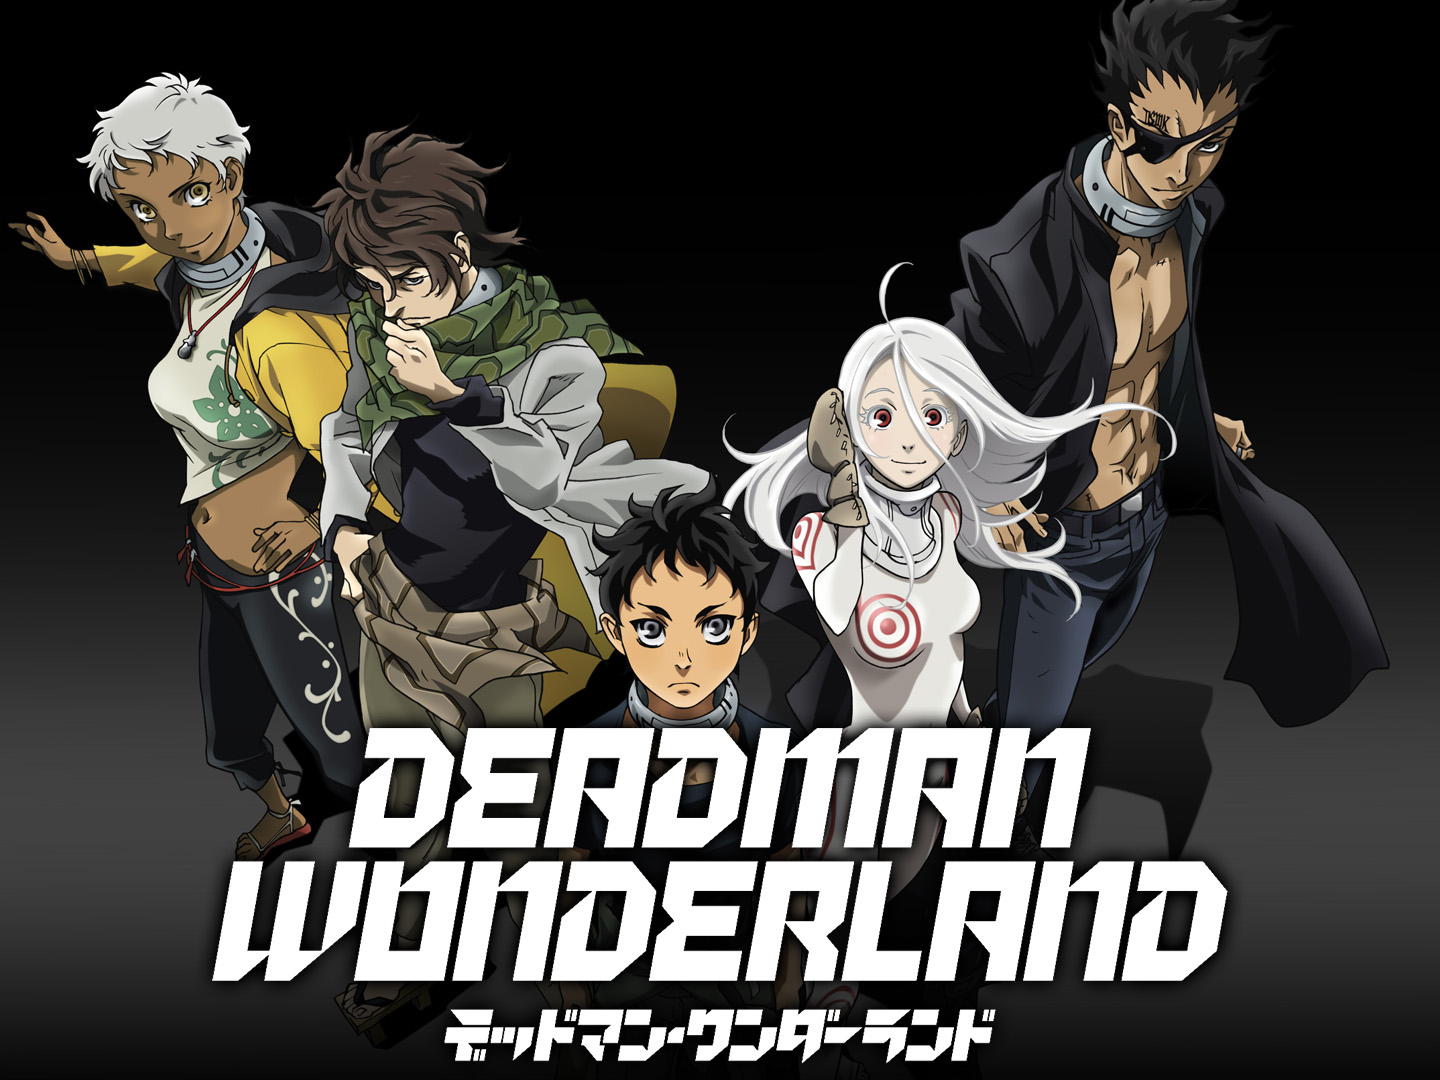 Deadman Wonderland (TV Series 2011) - IMDb